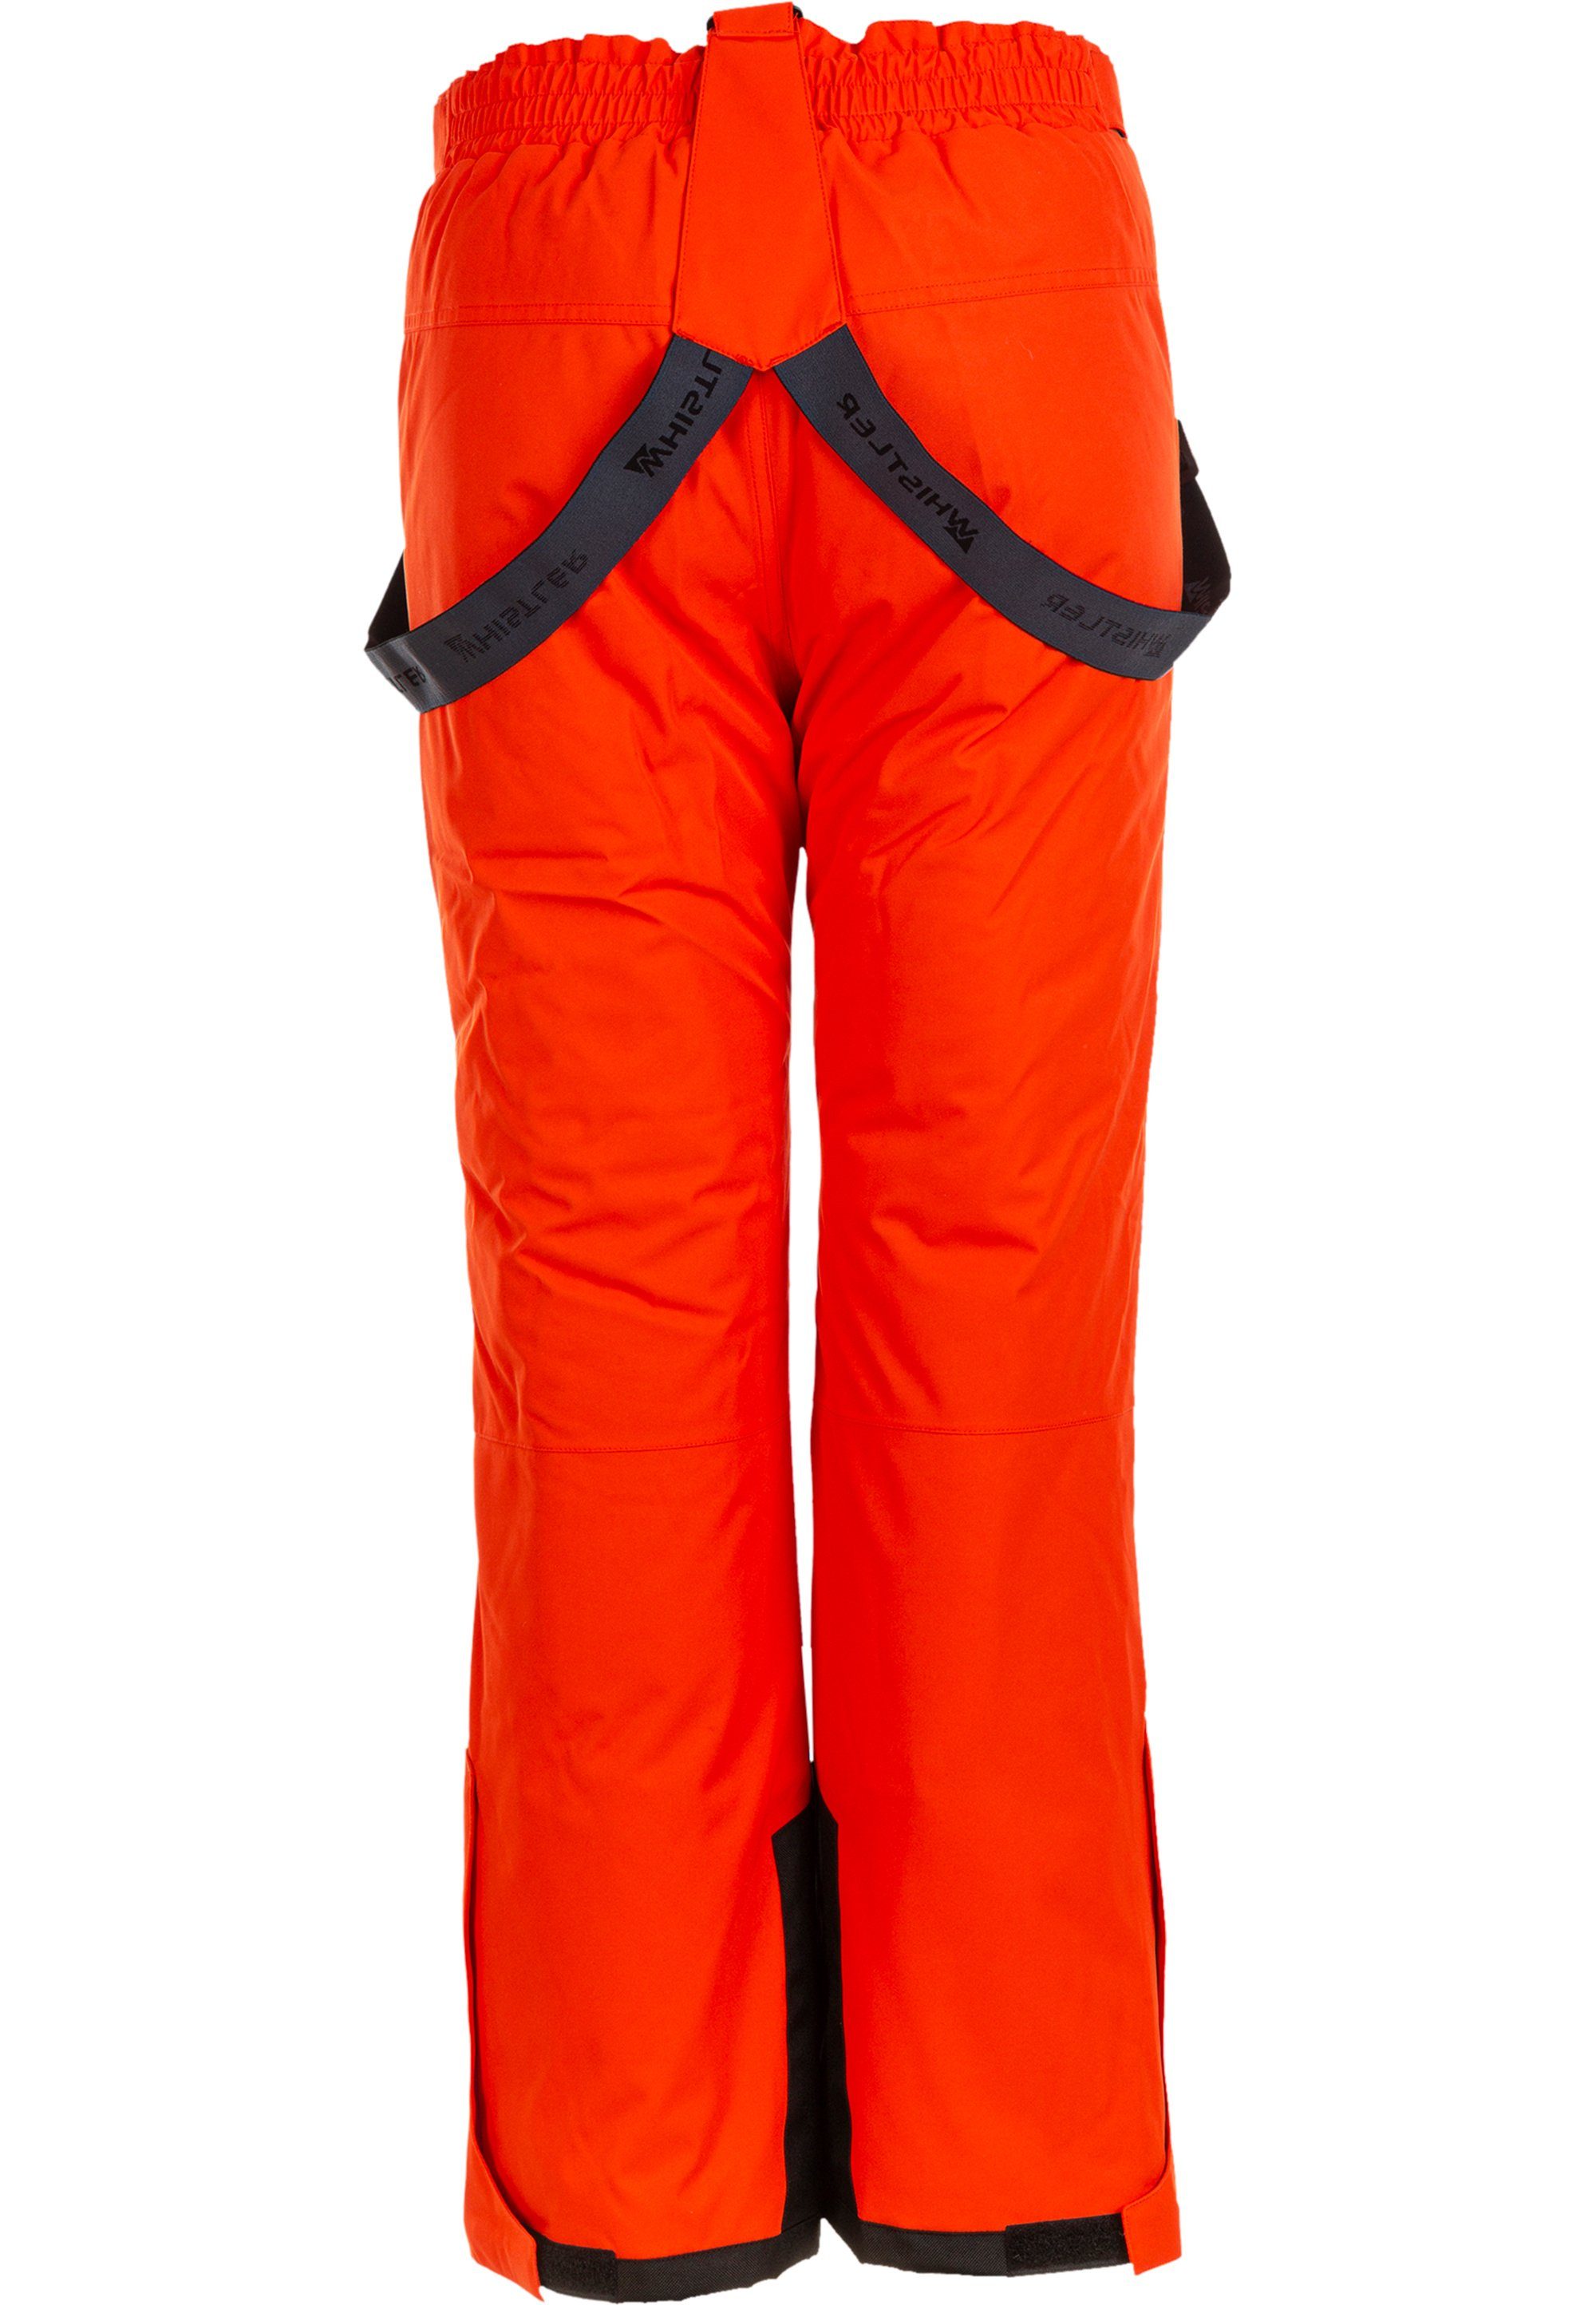 Fairfax und Funktionsmembran wasserdichter mit wind- rot-orange WHISTLER Skihose